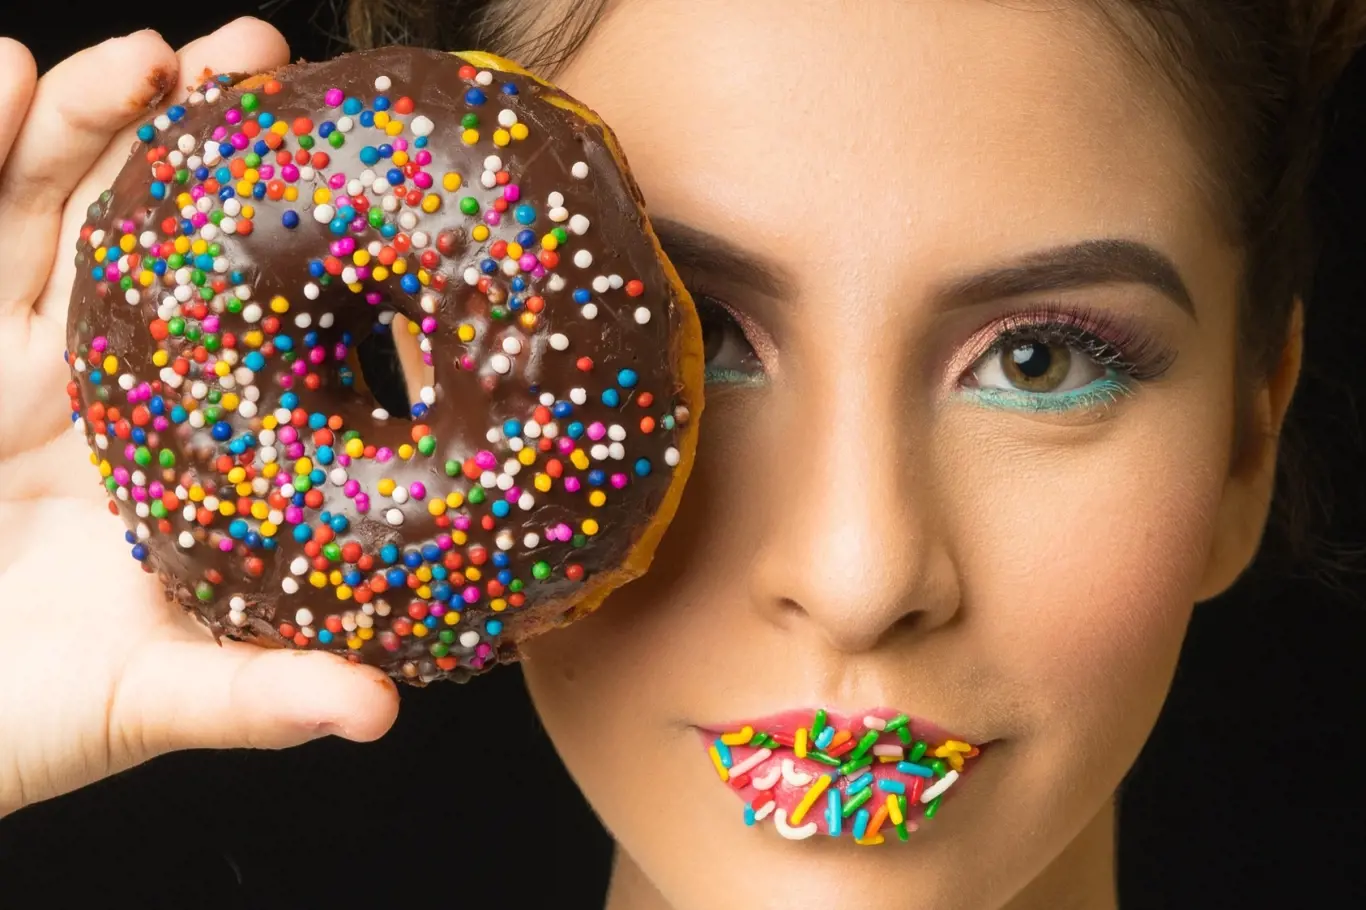 Jednoduché curky, například sladkosti, naše tělo opravdu každý den nepotřebuje.